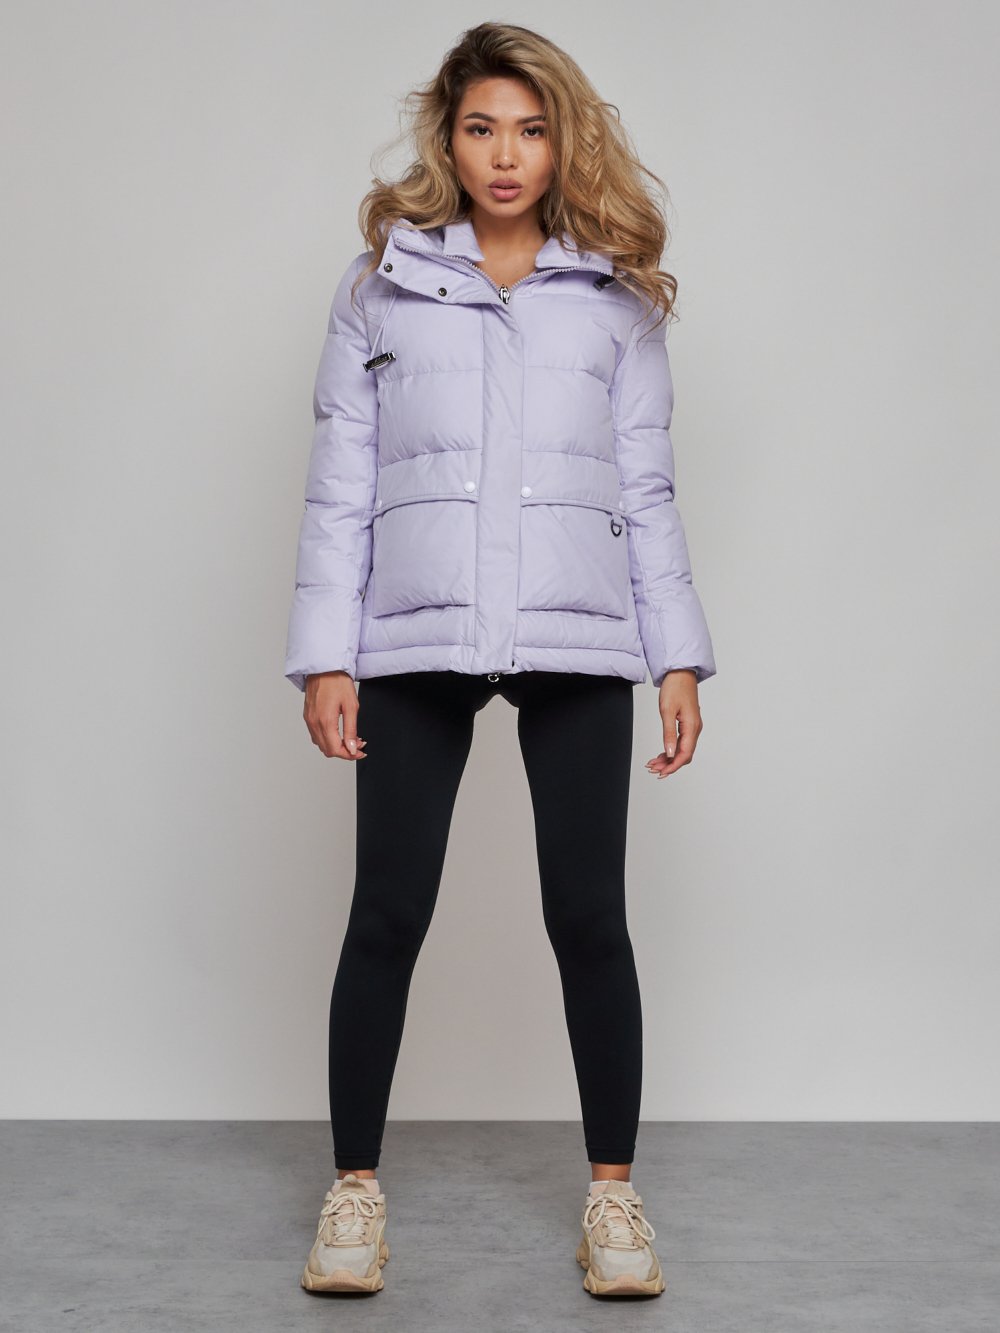 Купить оптом Зимняя женская куртка модная с капюшоном фиолетового цвета 52303F в Екатеринбурге